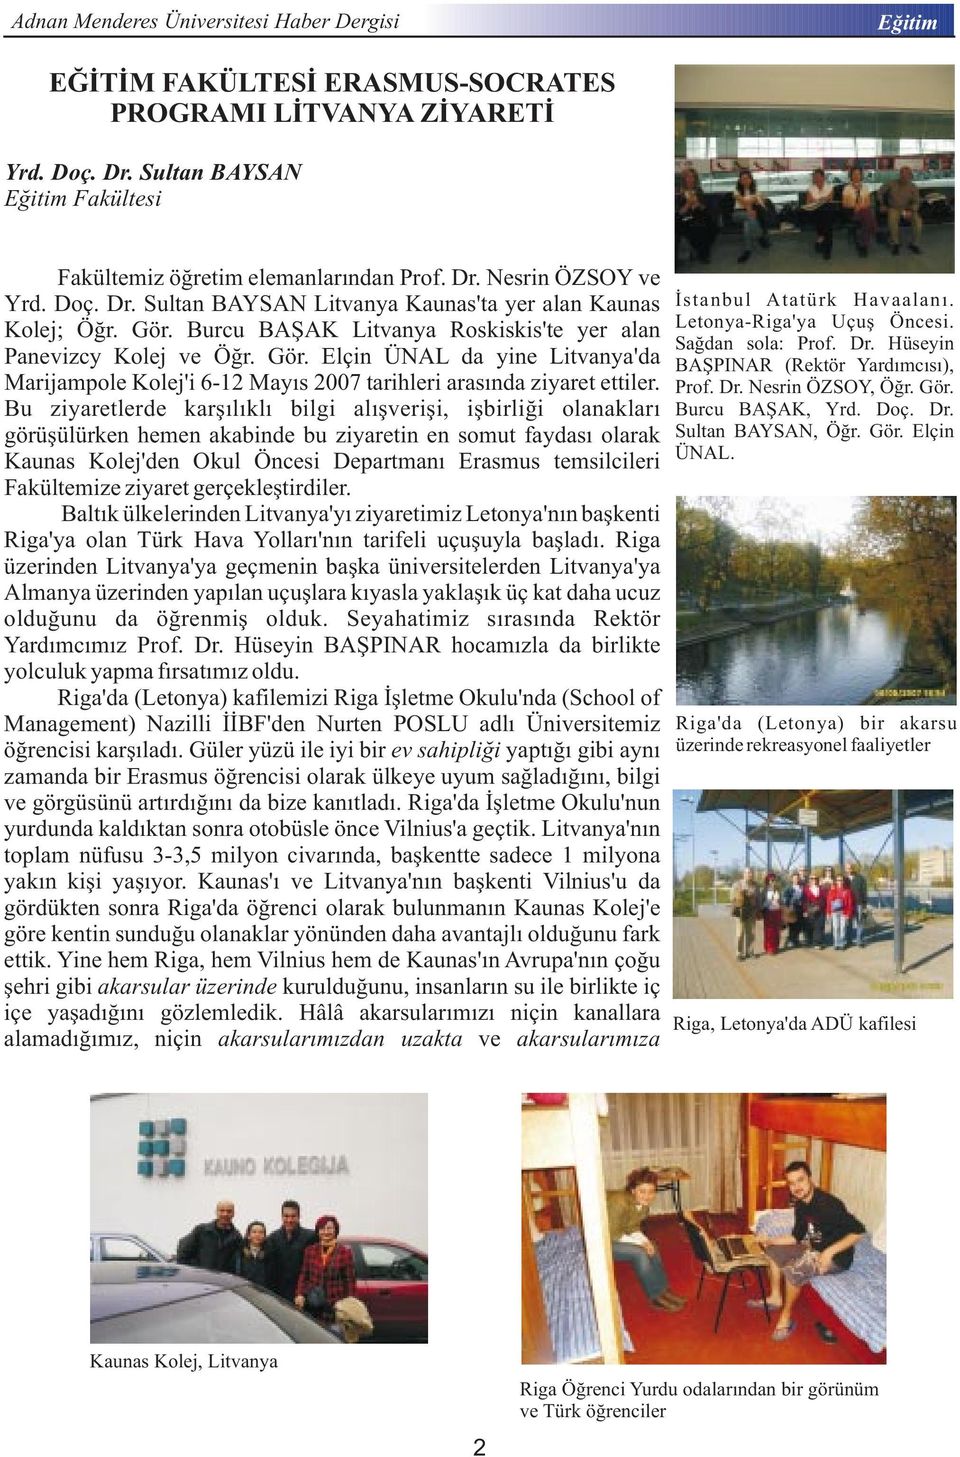 Bu ziyaretlerde karşılıklı bilgi alışverişi, işbirliği olanakları görüşülürken hemen akabinde bu ziyaretin en somut faydası olarak Kaunas Kolej'den Okul Öncesi Departmanı Erasmus temsilcileri